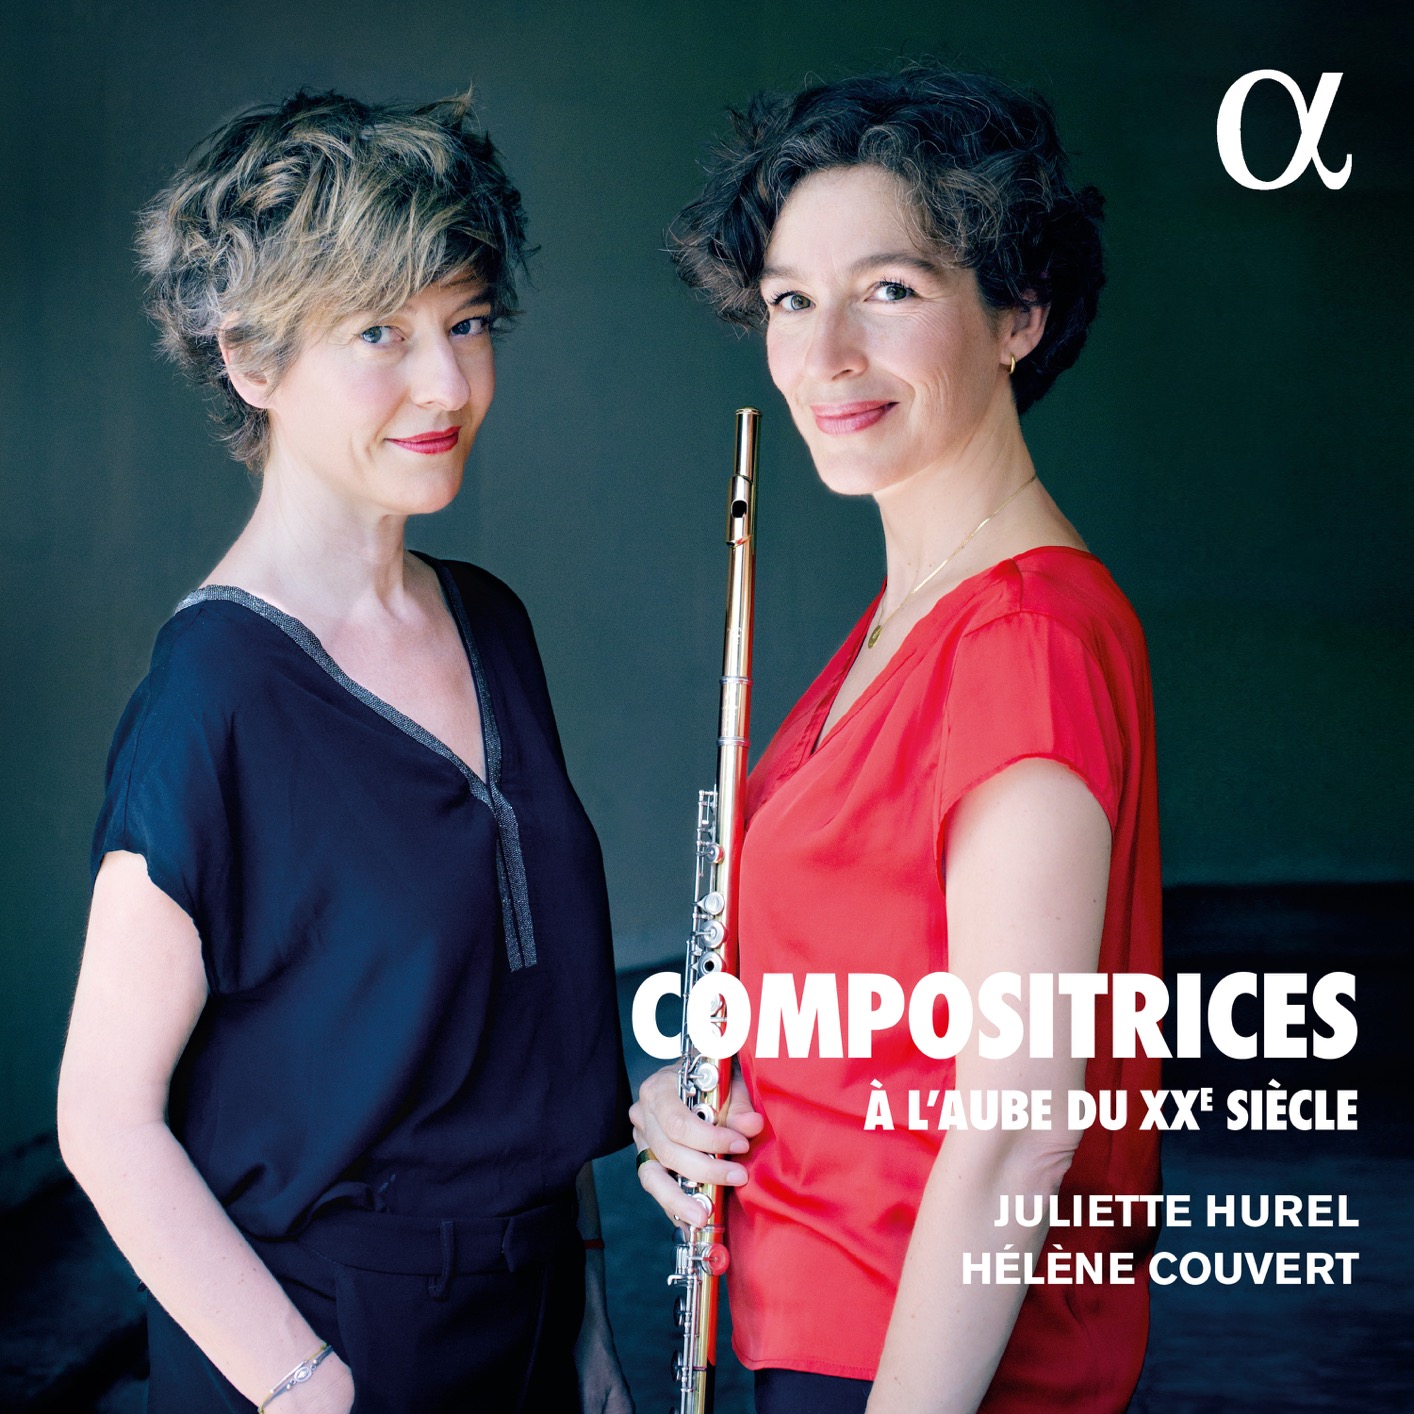 Juliette Hurel & Helene Couvert – Compositrices : A l’aube du XXe siecle (2020) [FLAC 24bit/48kHz]